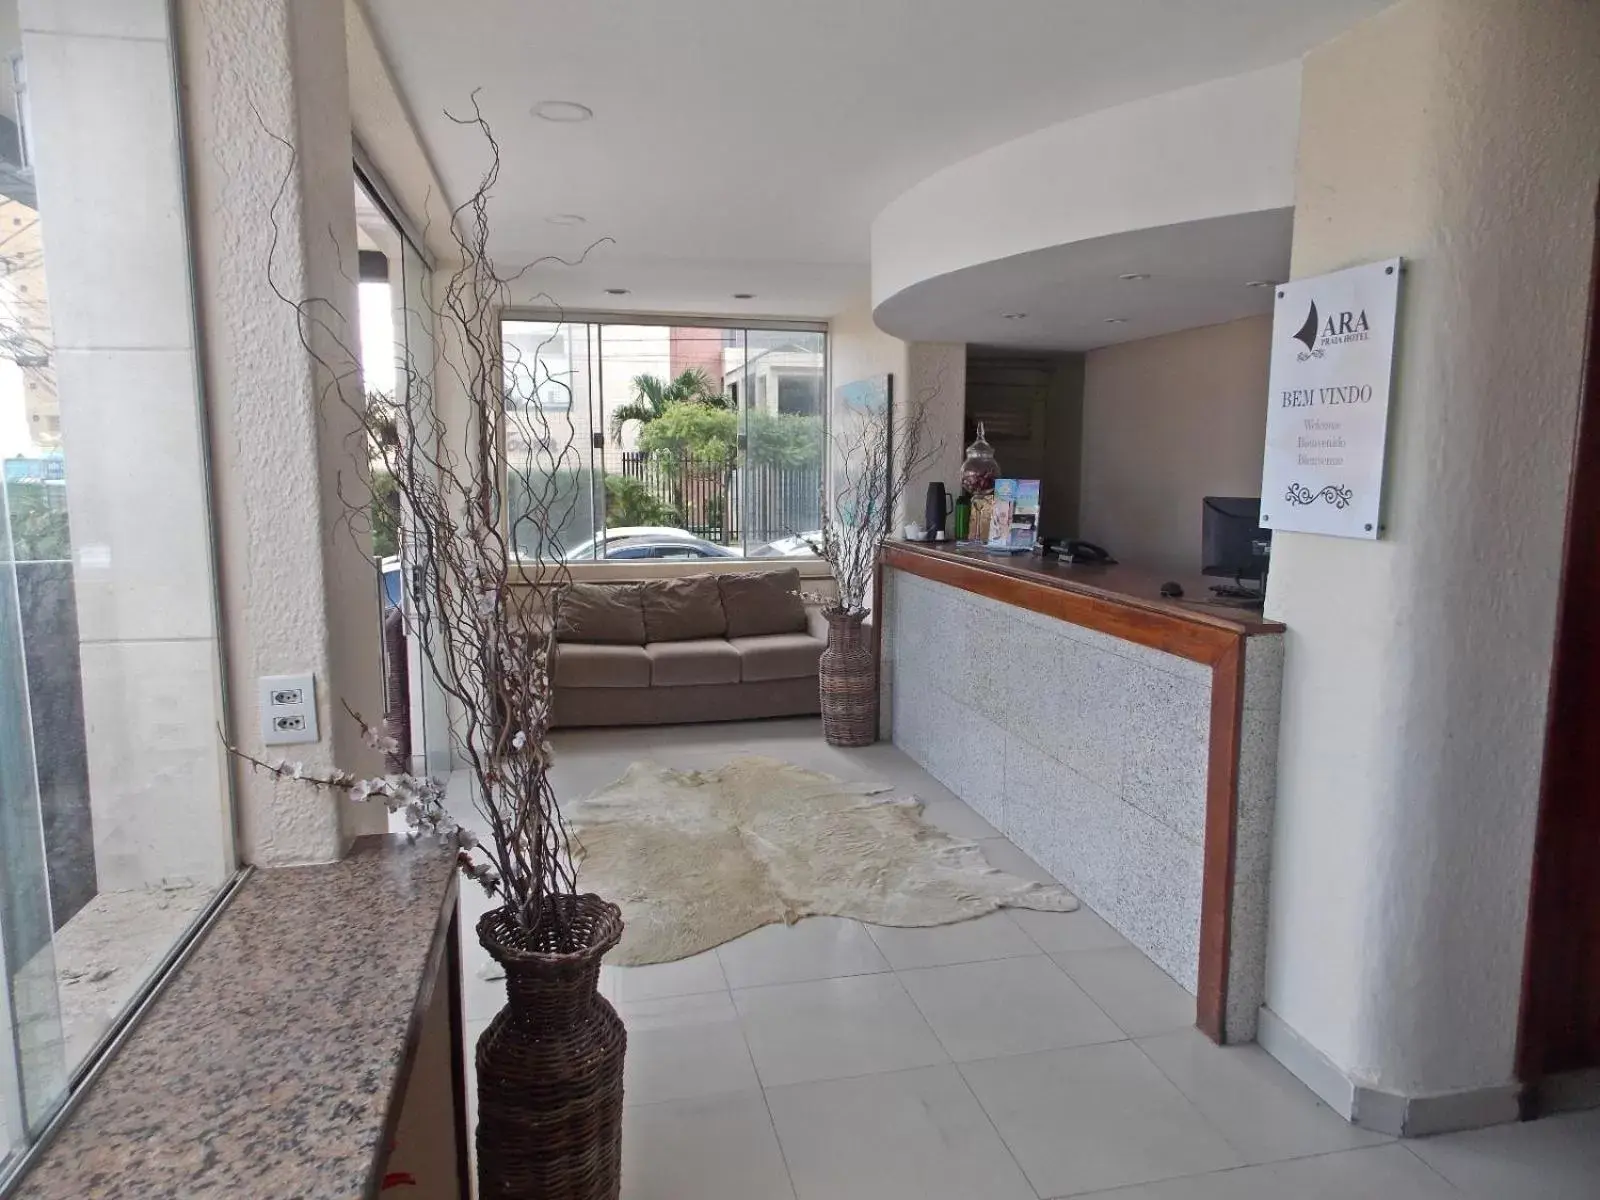 Lobby/Reception in Ara Mar Praia Hotel